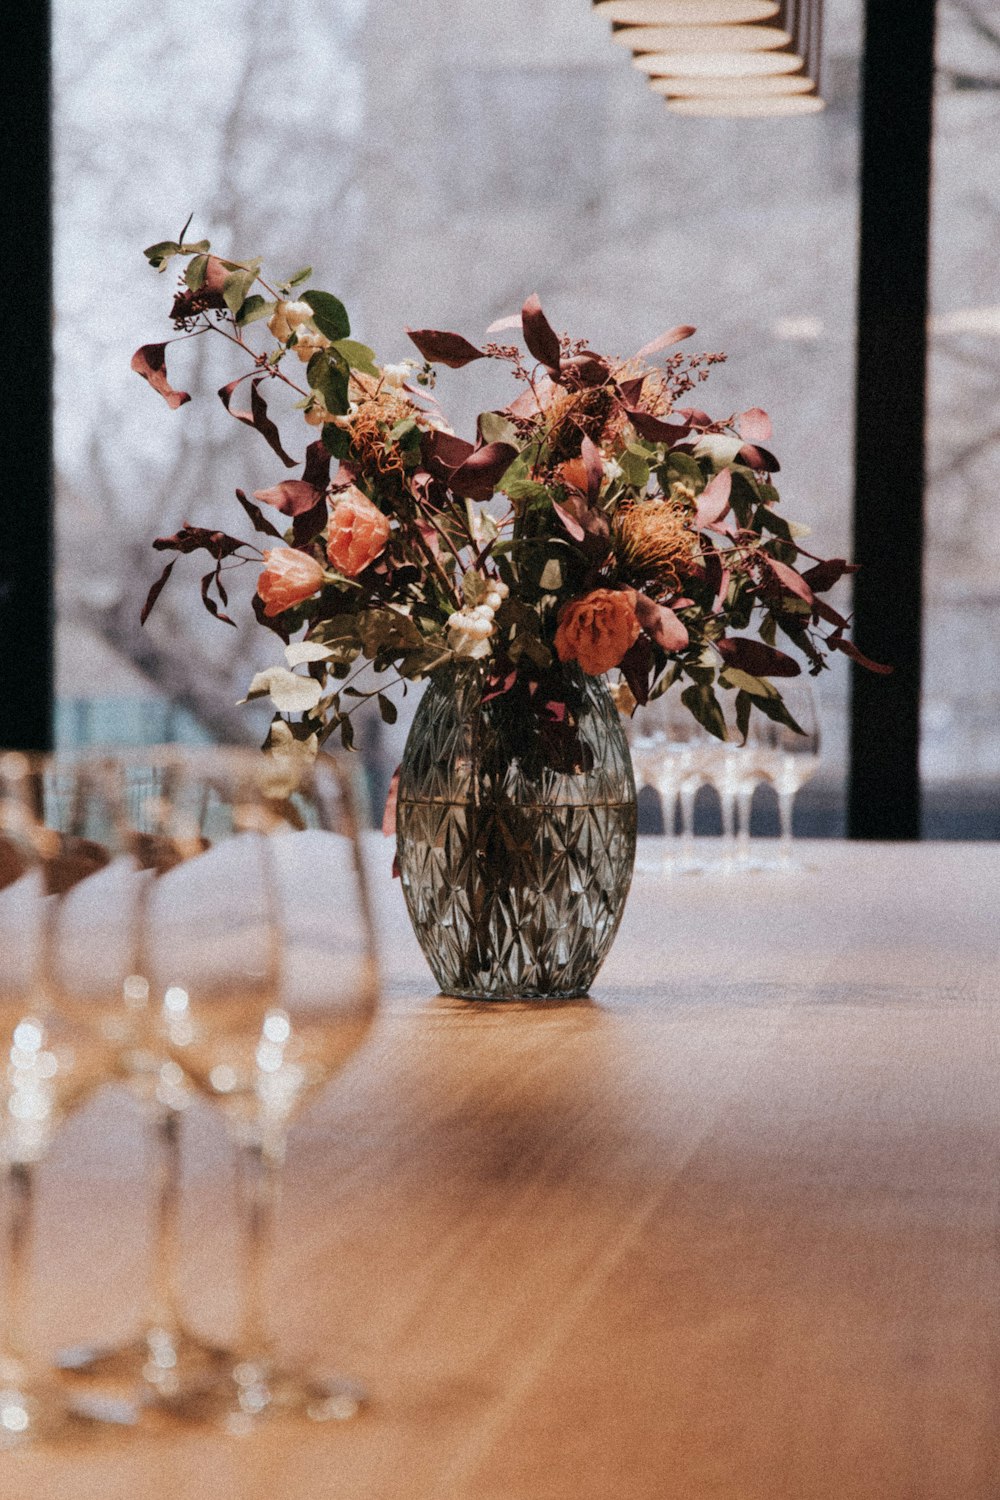 갈색 테이블에 빨간 꽃잎이 달린 꽃 센터피스